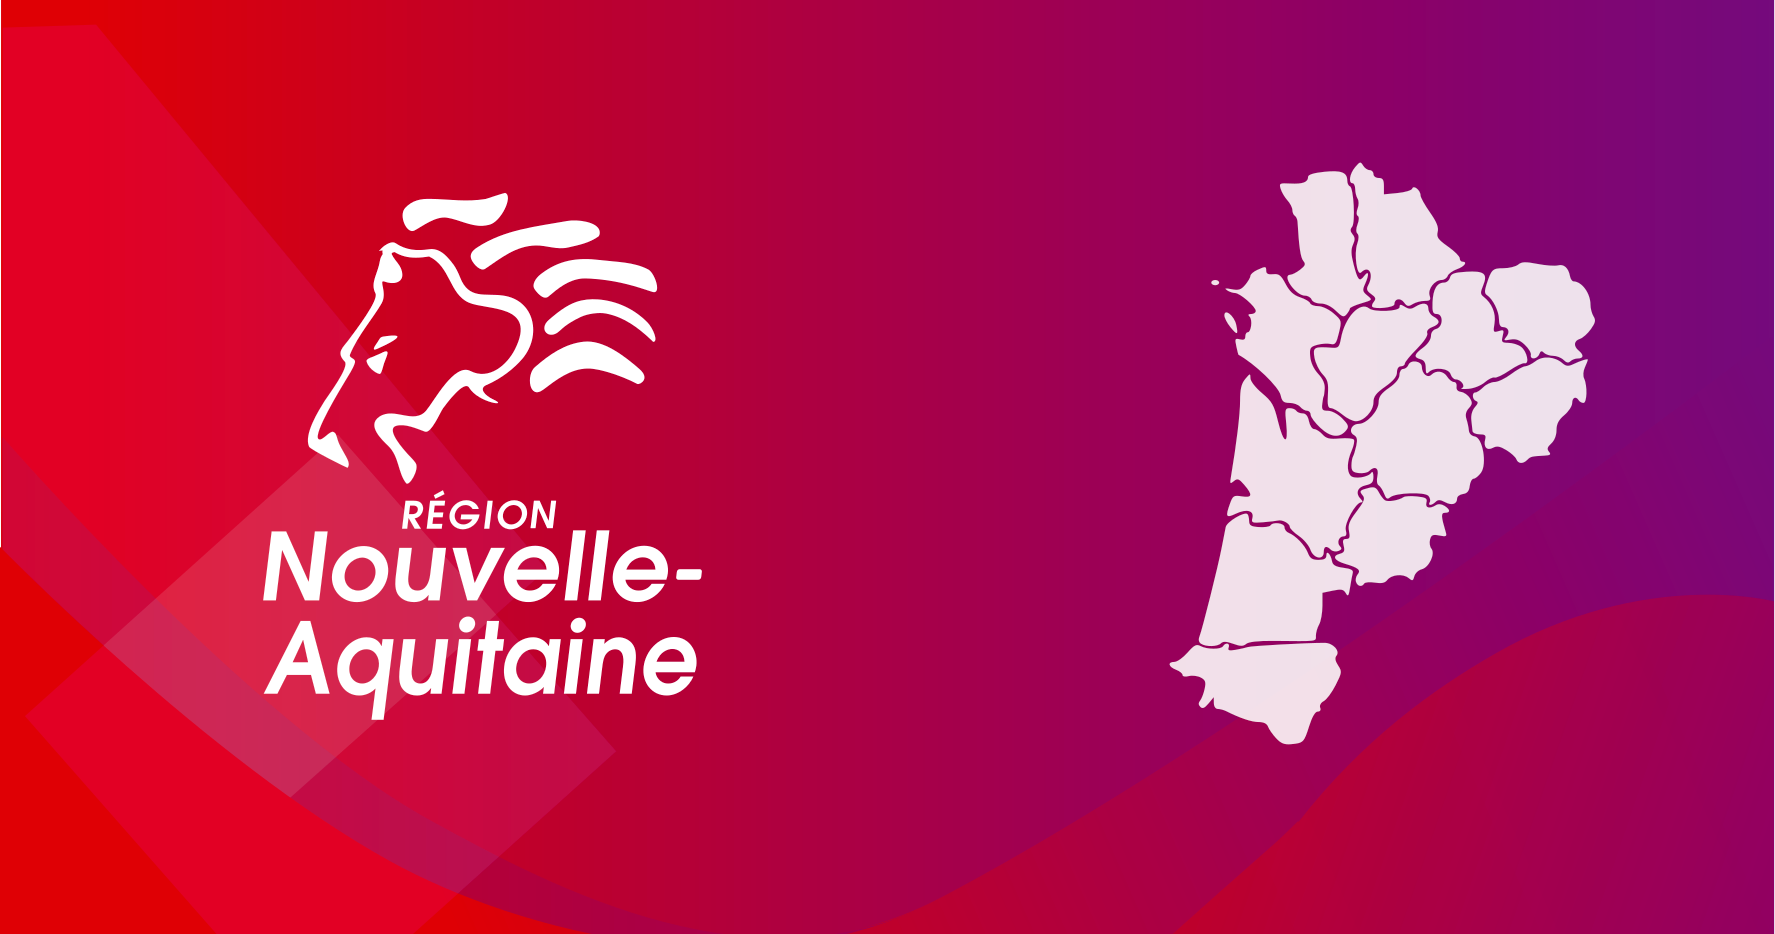 Bourses d'accueil d'étudiants étrangers en Nouvelle-Aquitaine,  France